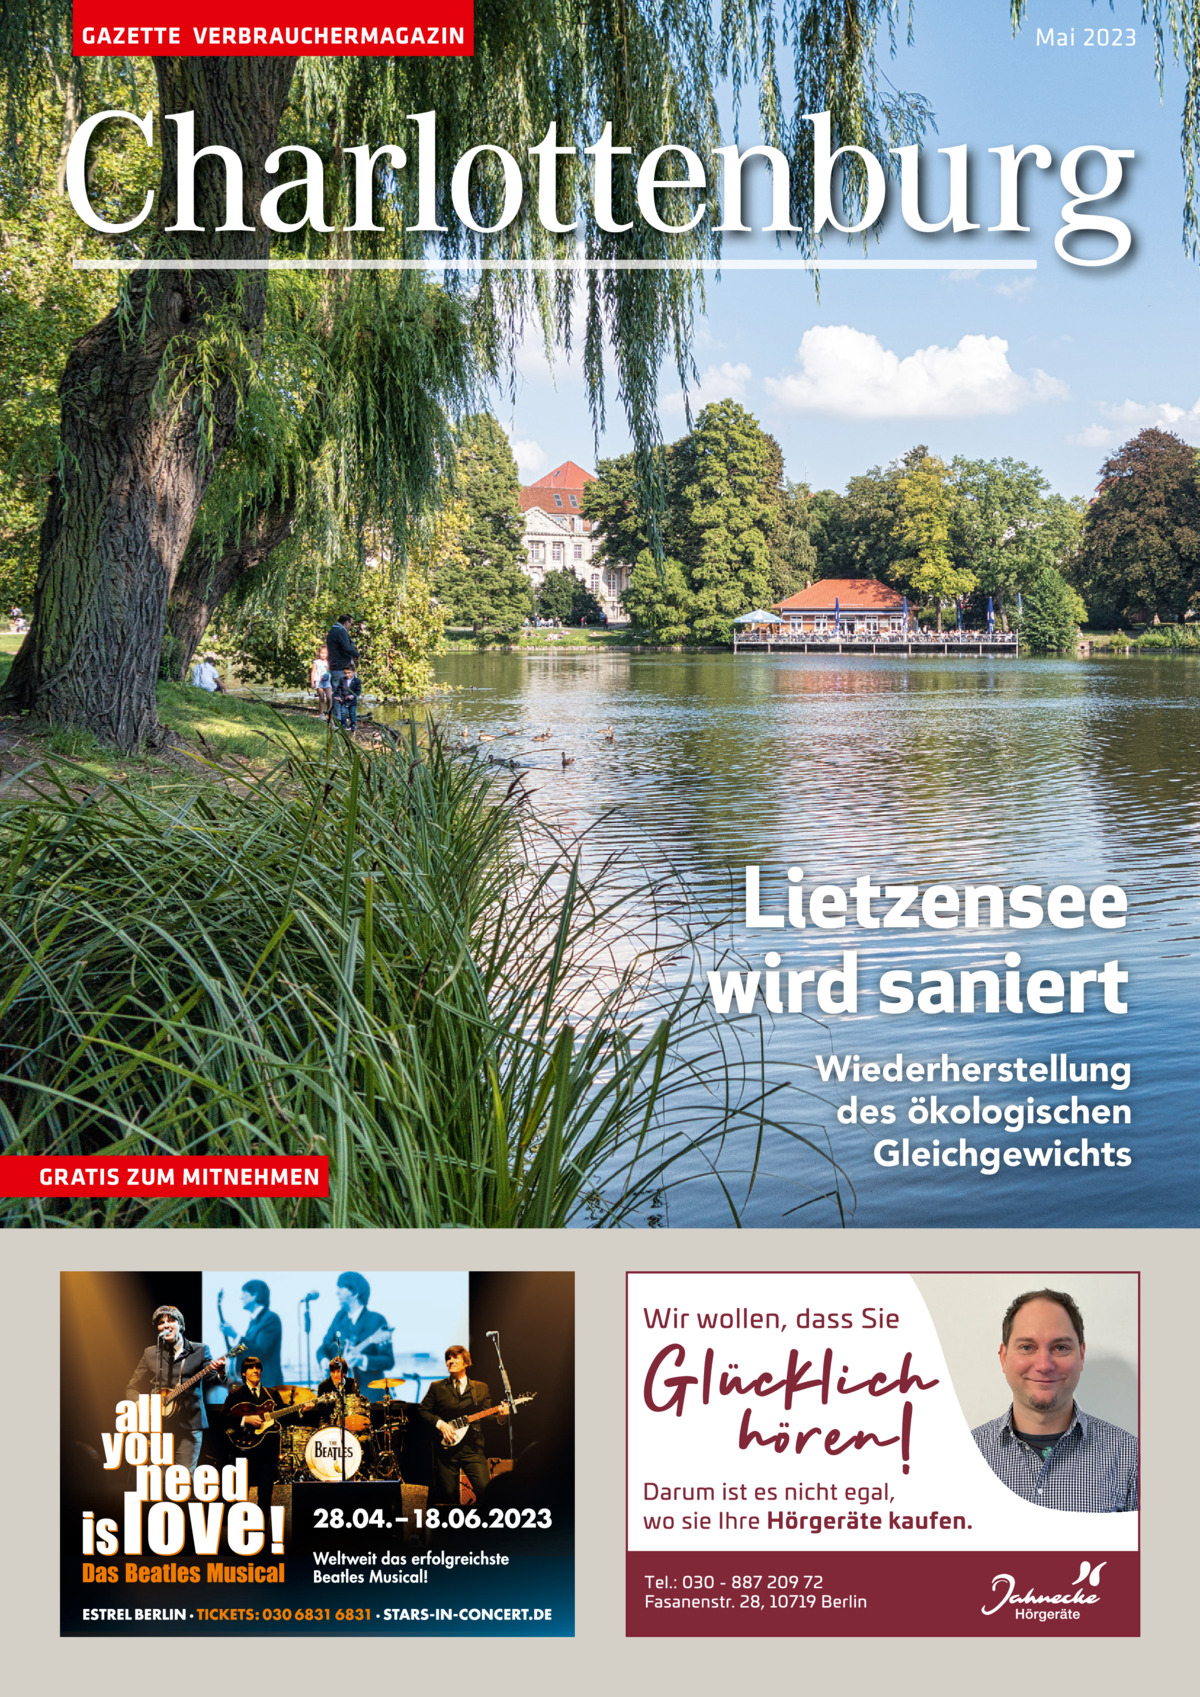 GAZETTE VERBRAUCHERMAGAZIN  Mai 2023  Charlottenburg  Lietzensee wird saniert GRATIS ZUM MITNEHMEN  Wiederherstellung des ökologischen Gleichgewichts